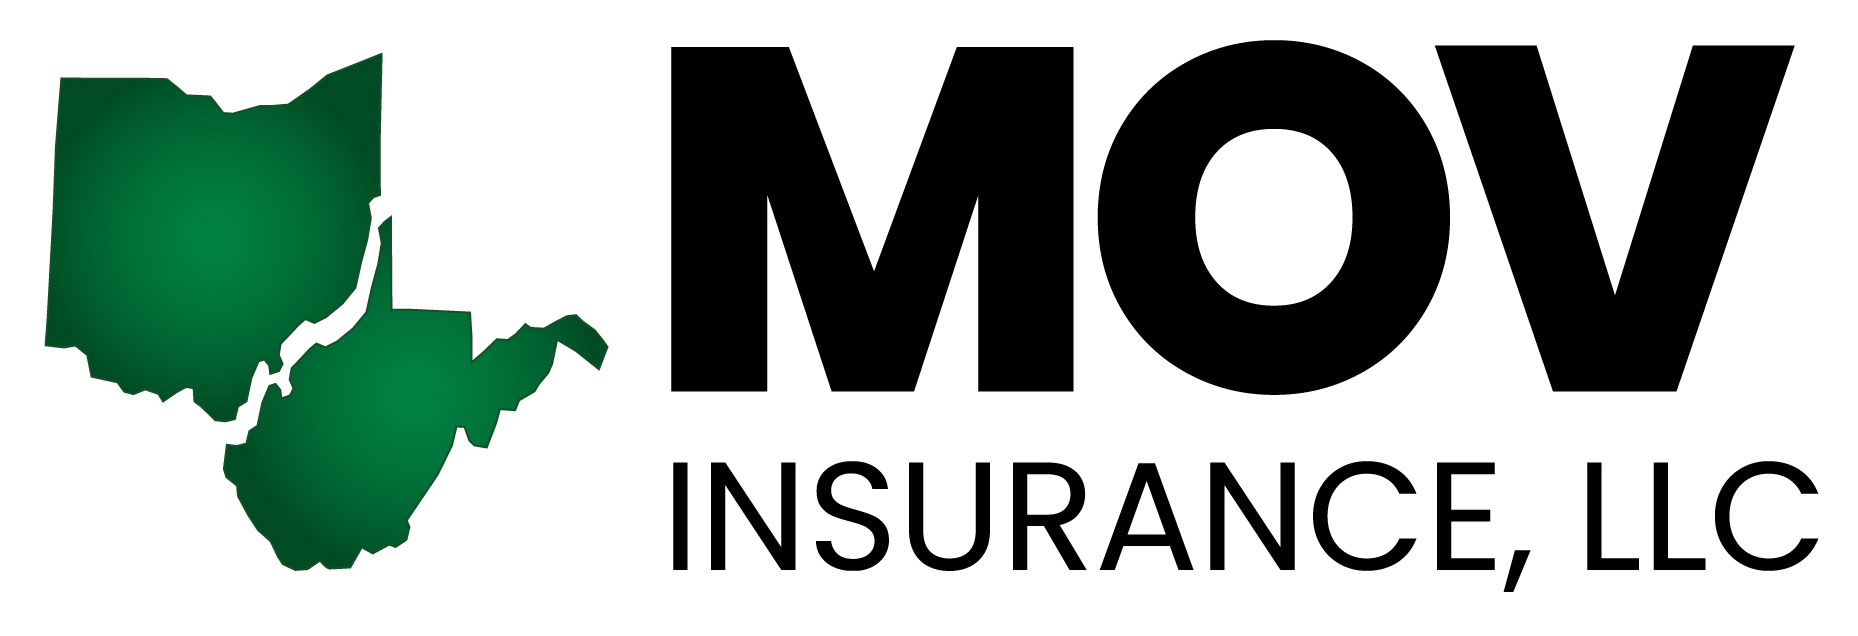 MOV Insurance